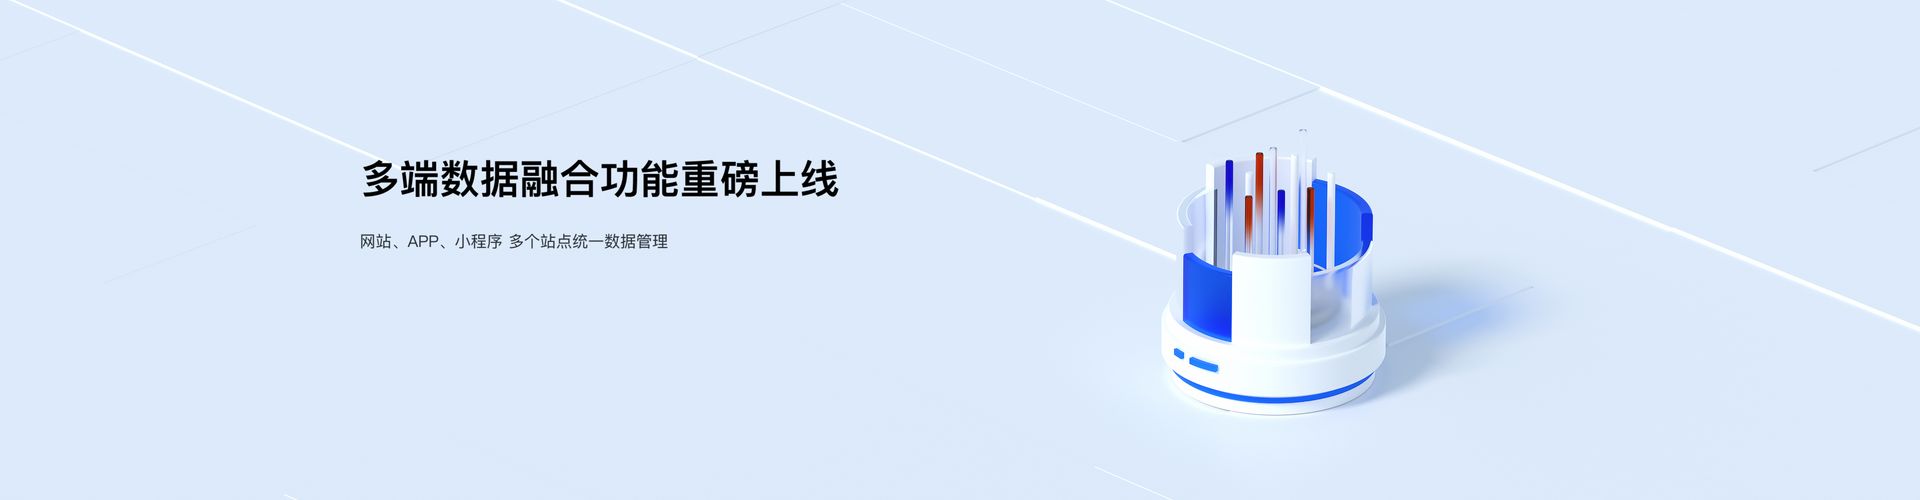 【北京seo】领先的中文网站分析平台